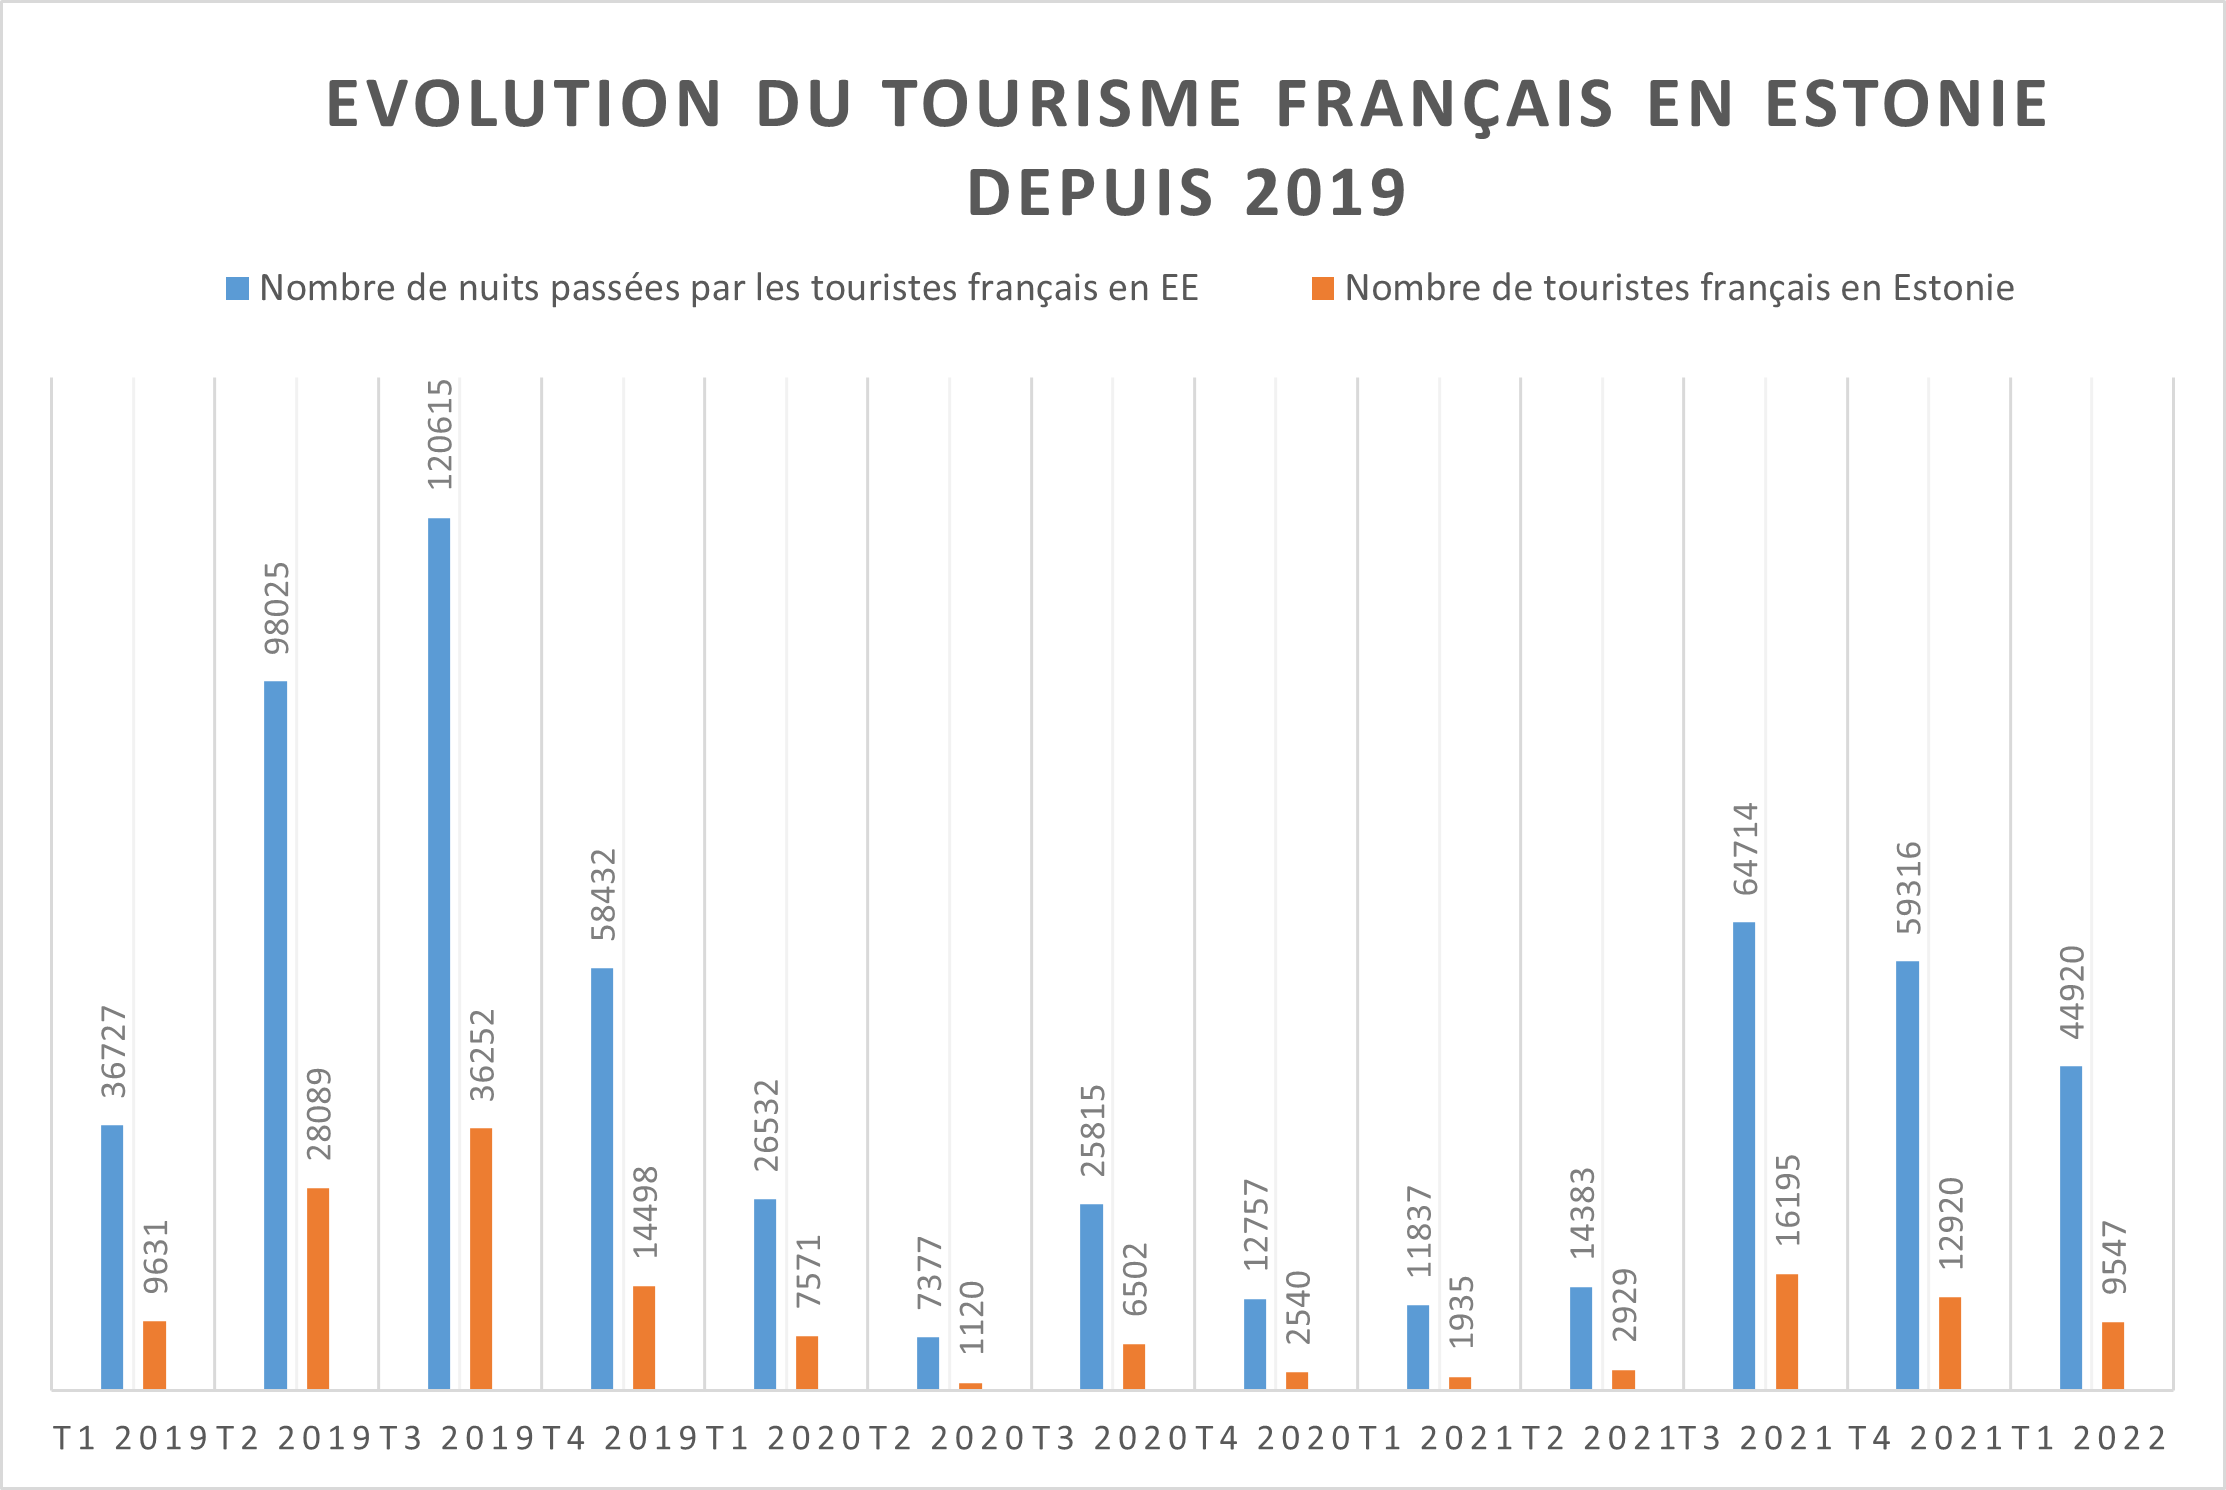 Tourisme français en EE depuis 2019